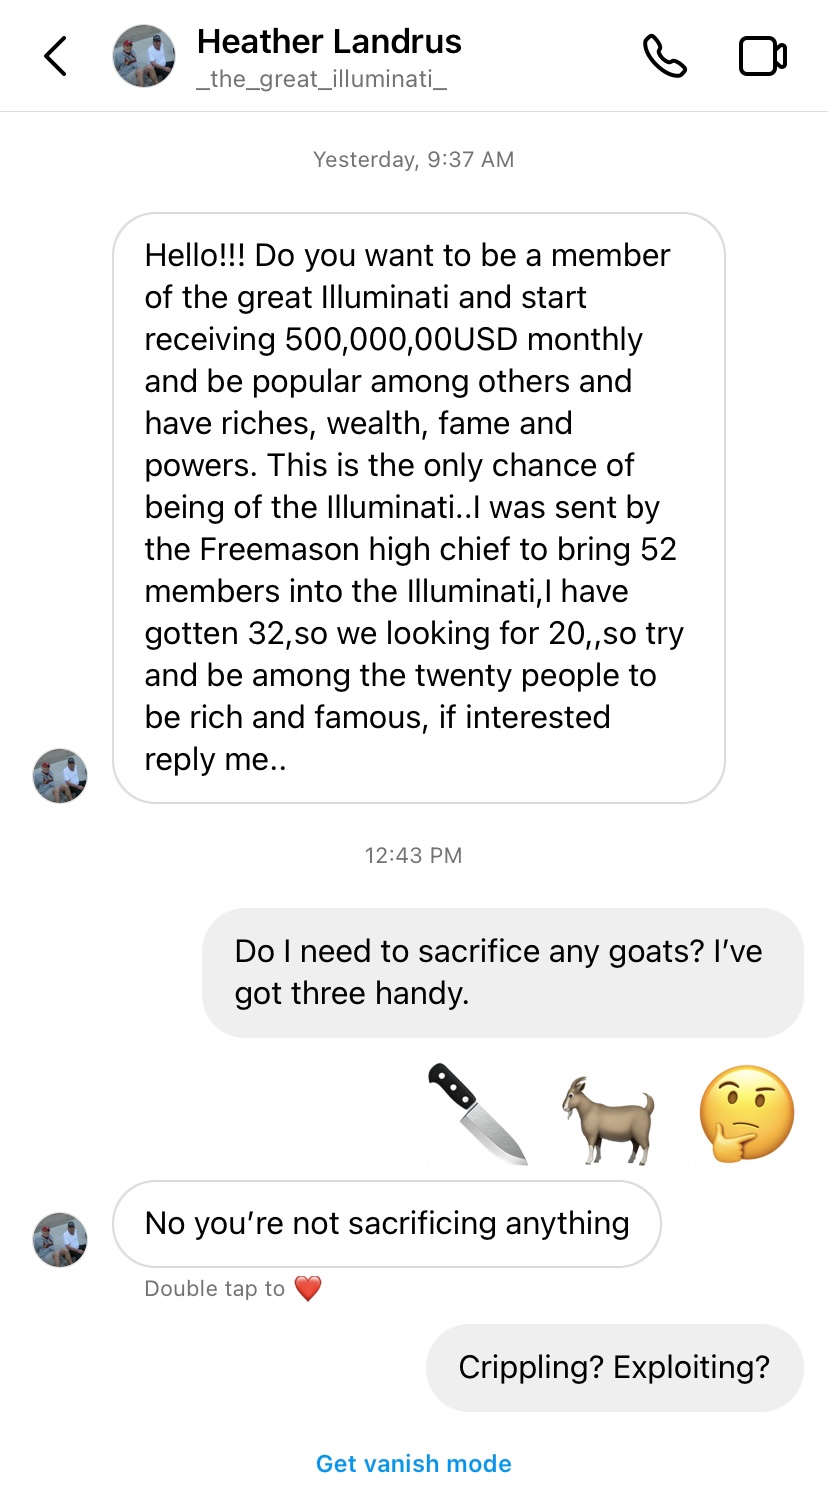 Do I need to sacrifice any goats